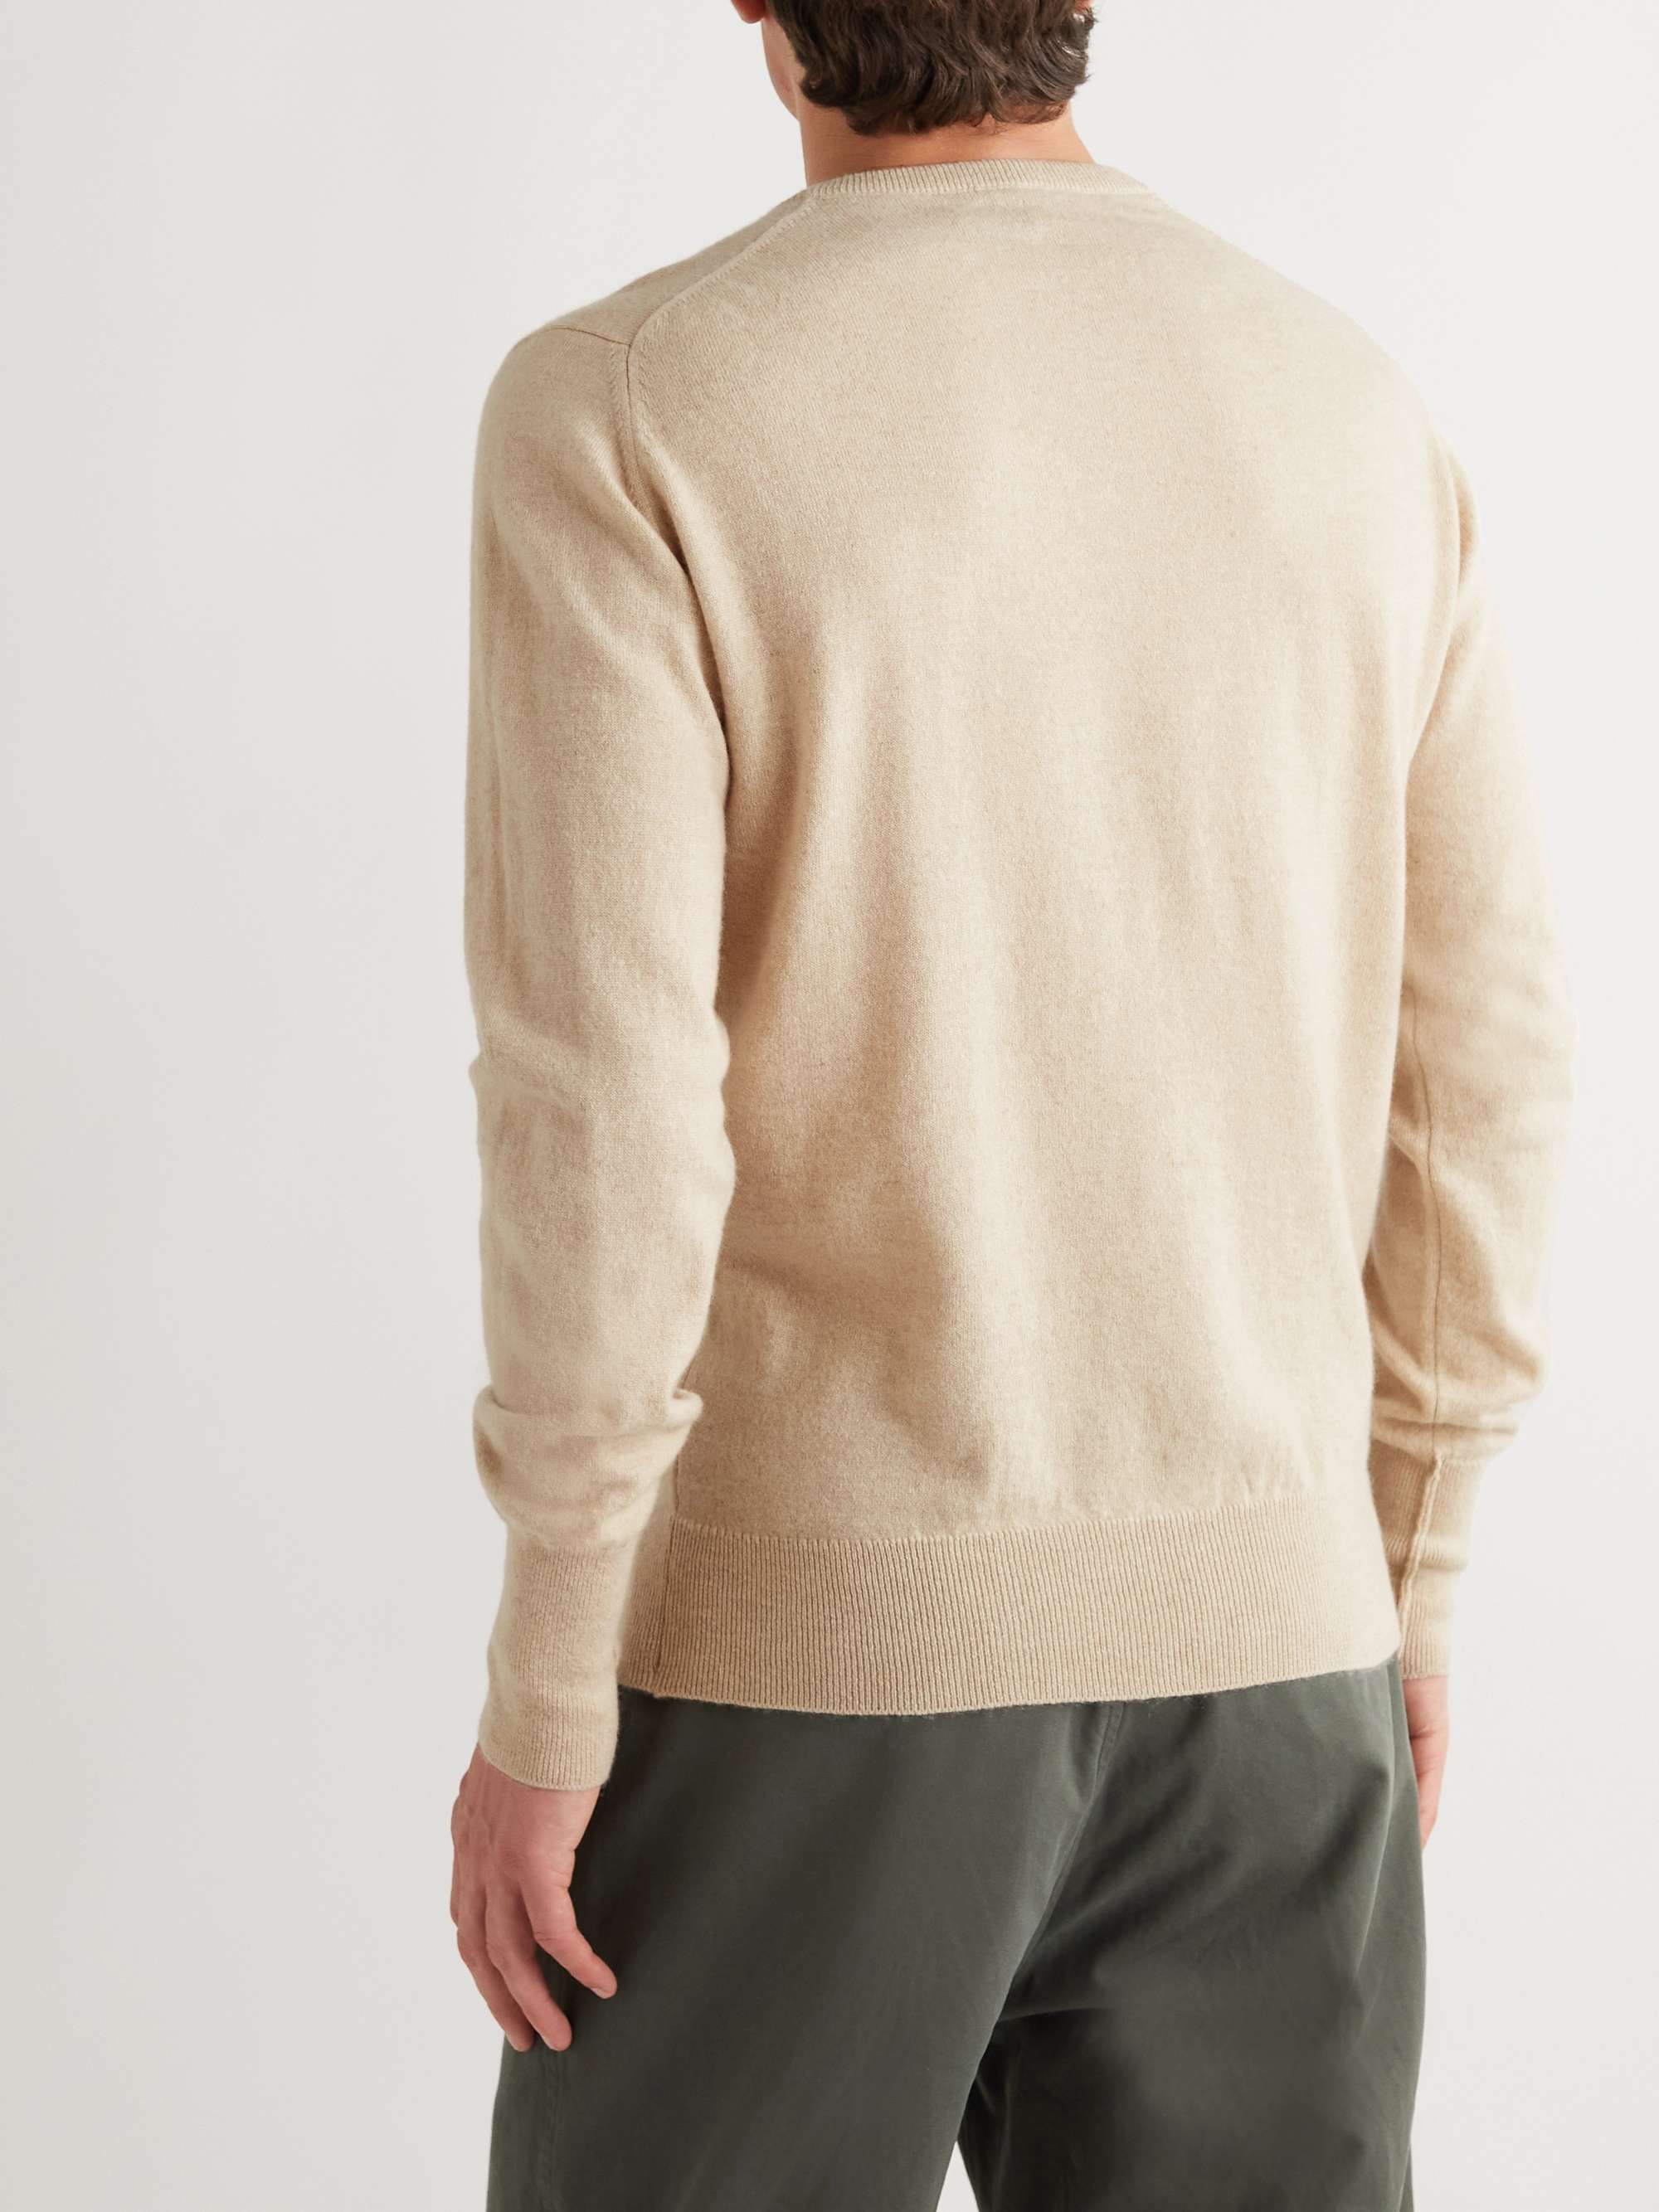 WILLIAM LOCKIE Oxton Cashmere Sweater